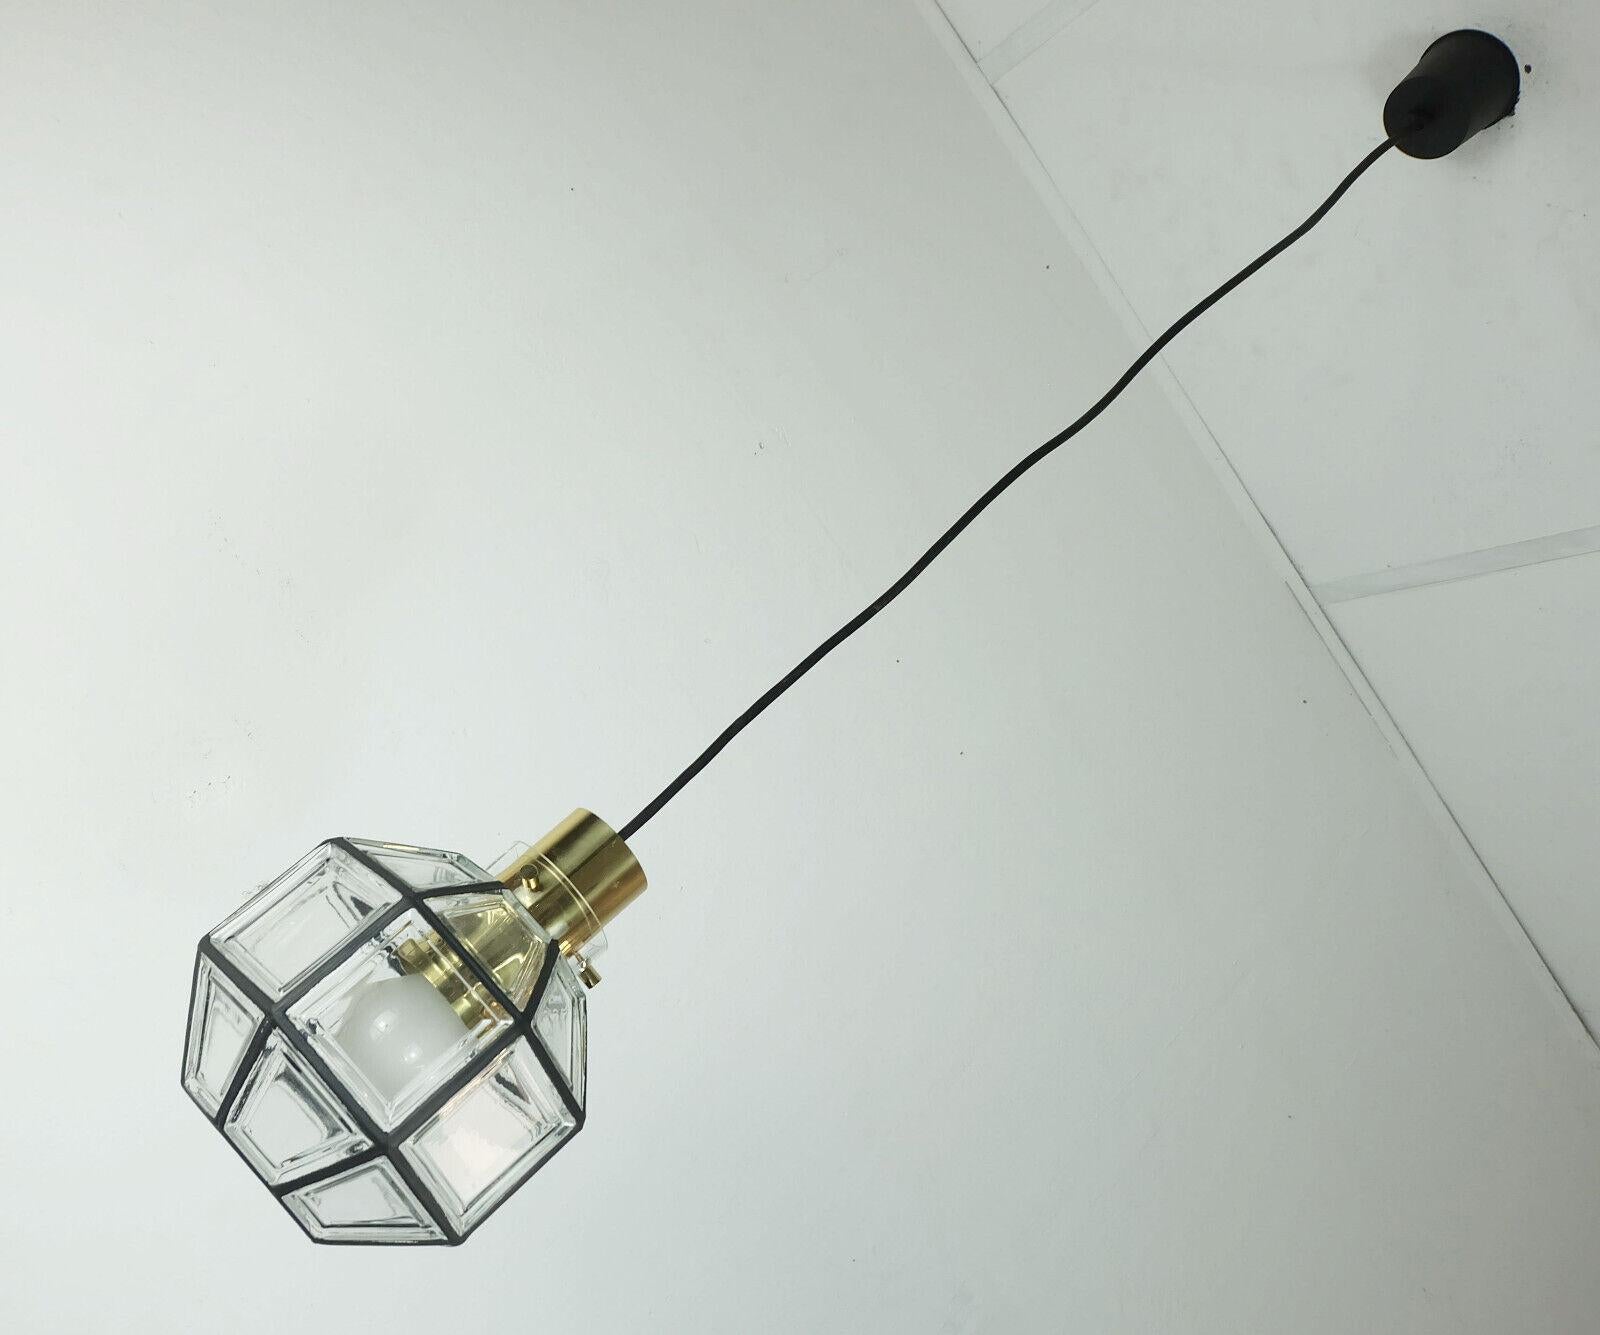 Fantastique lampe suspendue vintage fabriquée dans les années 1960-1970 par Glashuette Limburg en Allemagne de l'Ouest. Abat-jour en verre clair avec des lignes noires qui donnent l'impression de fer entre les champs géométriques. La base est en